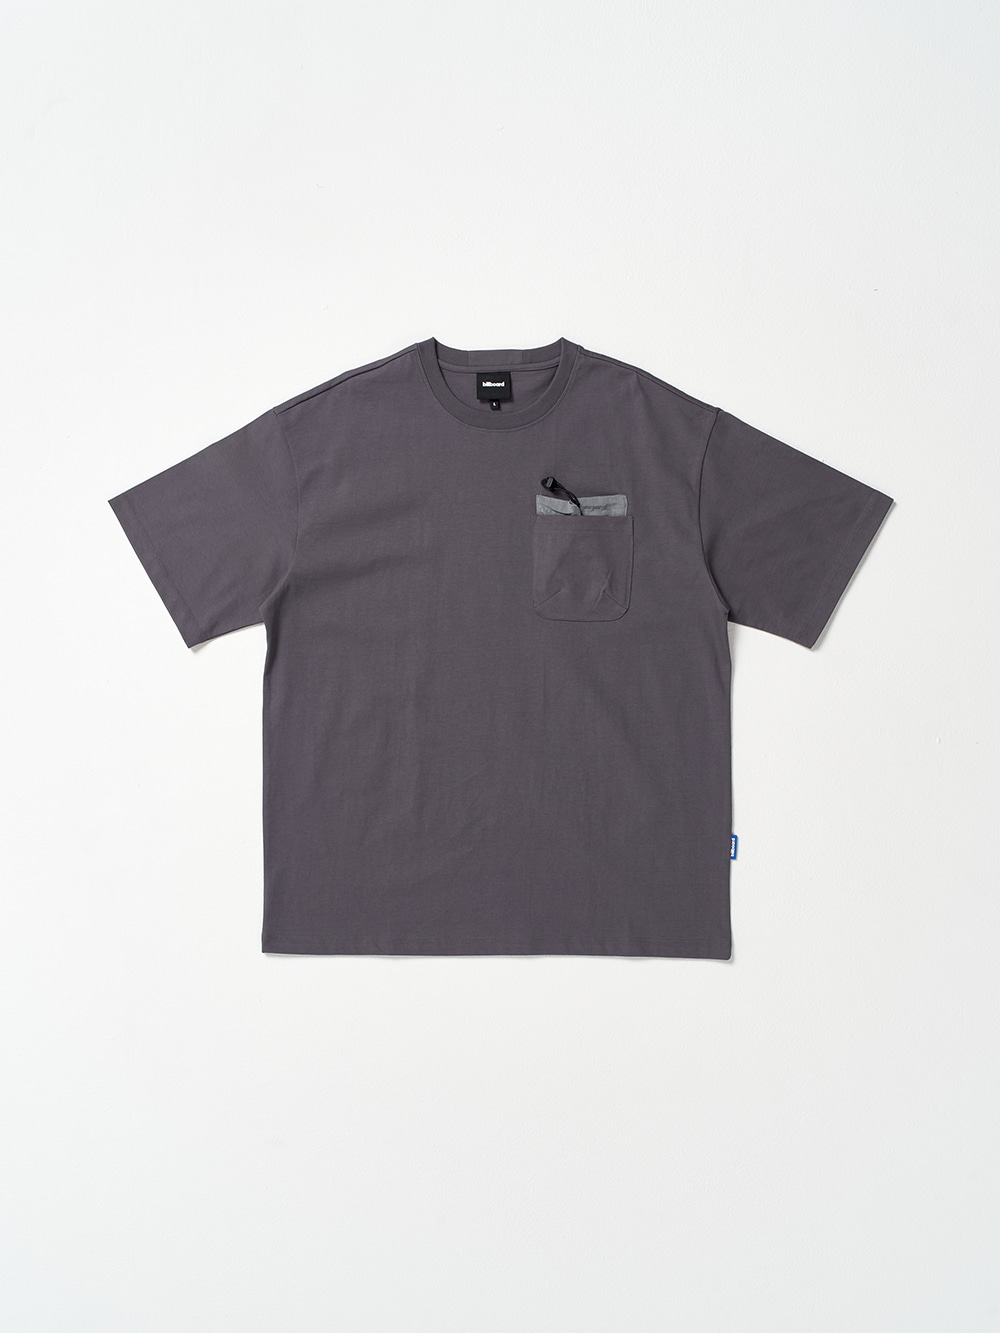 Mixed Pocket Half T-shirts_Charcoal